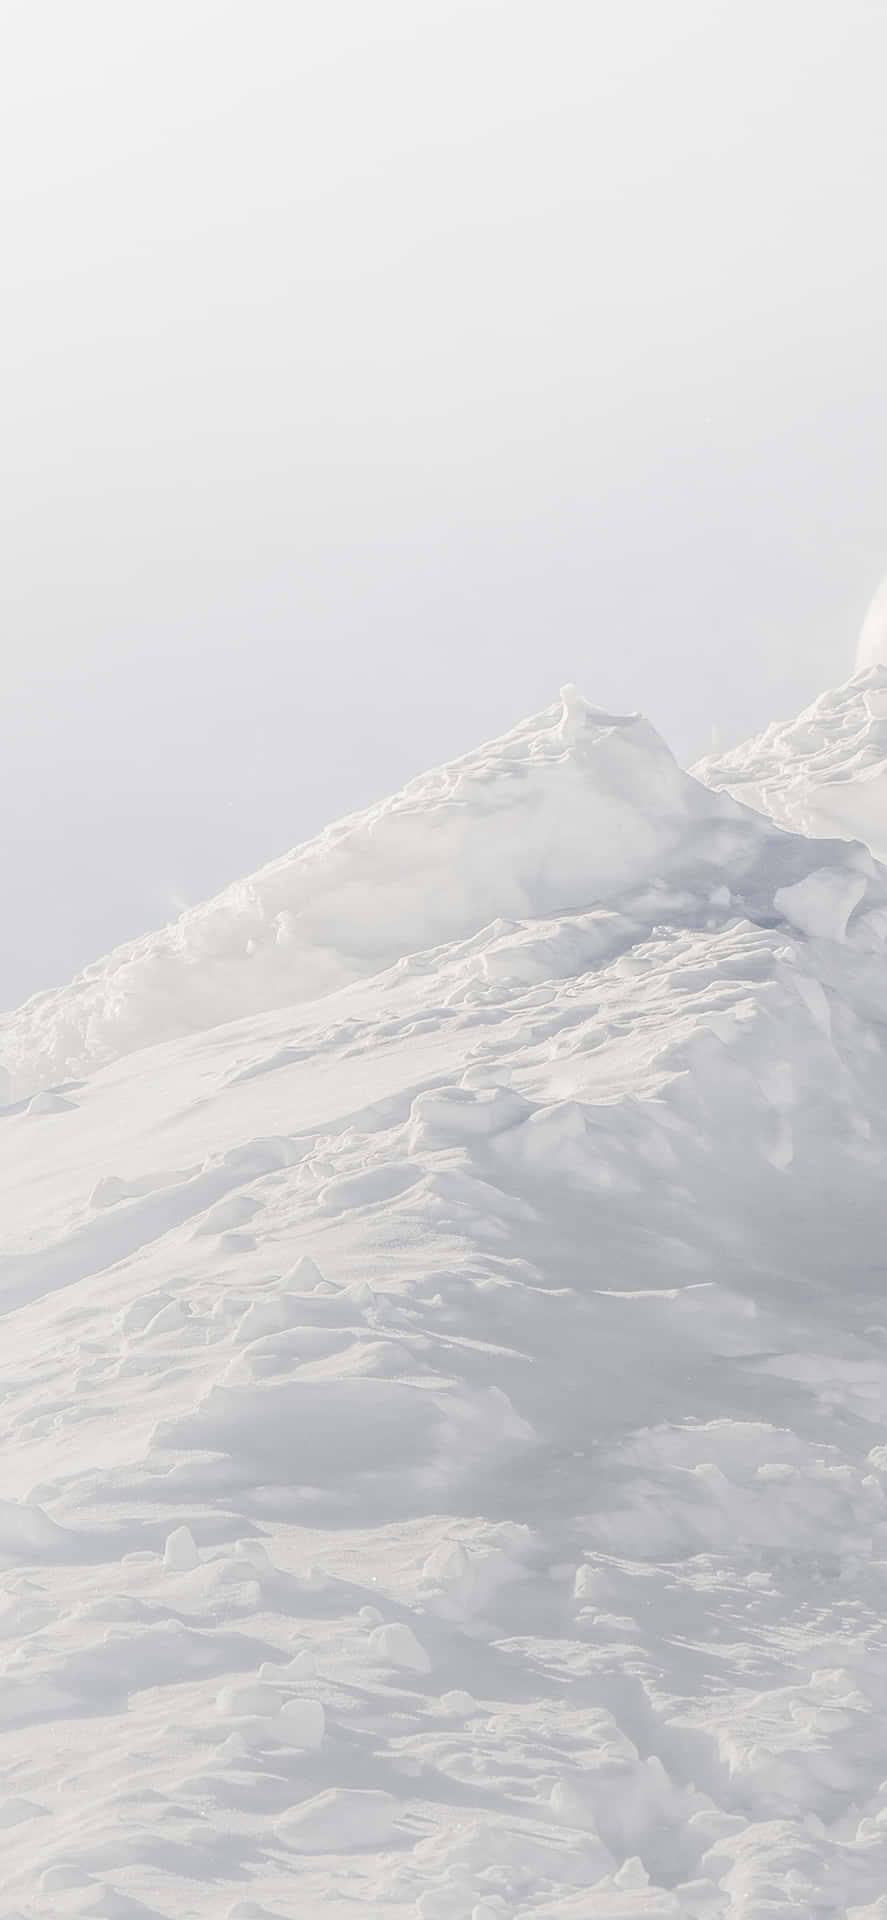 Unapersona Sta Sciando Lungo Una Pista Coperta Di Neve.